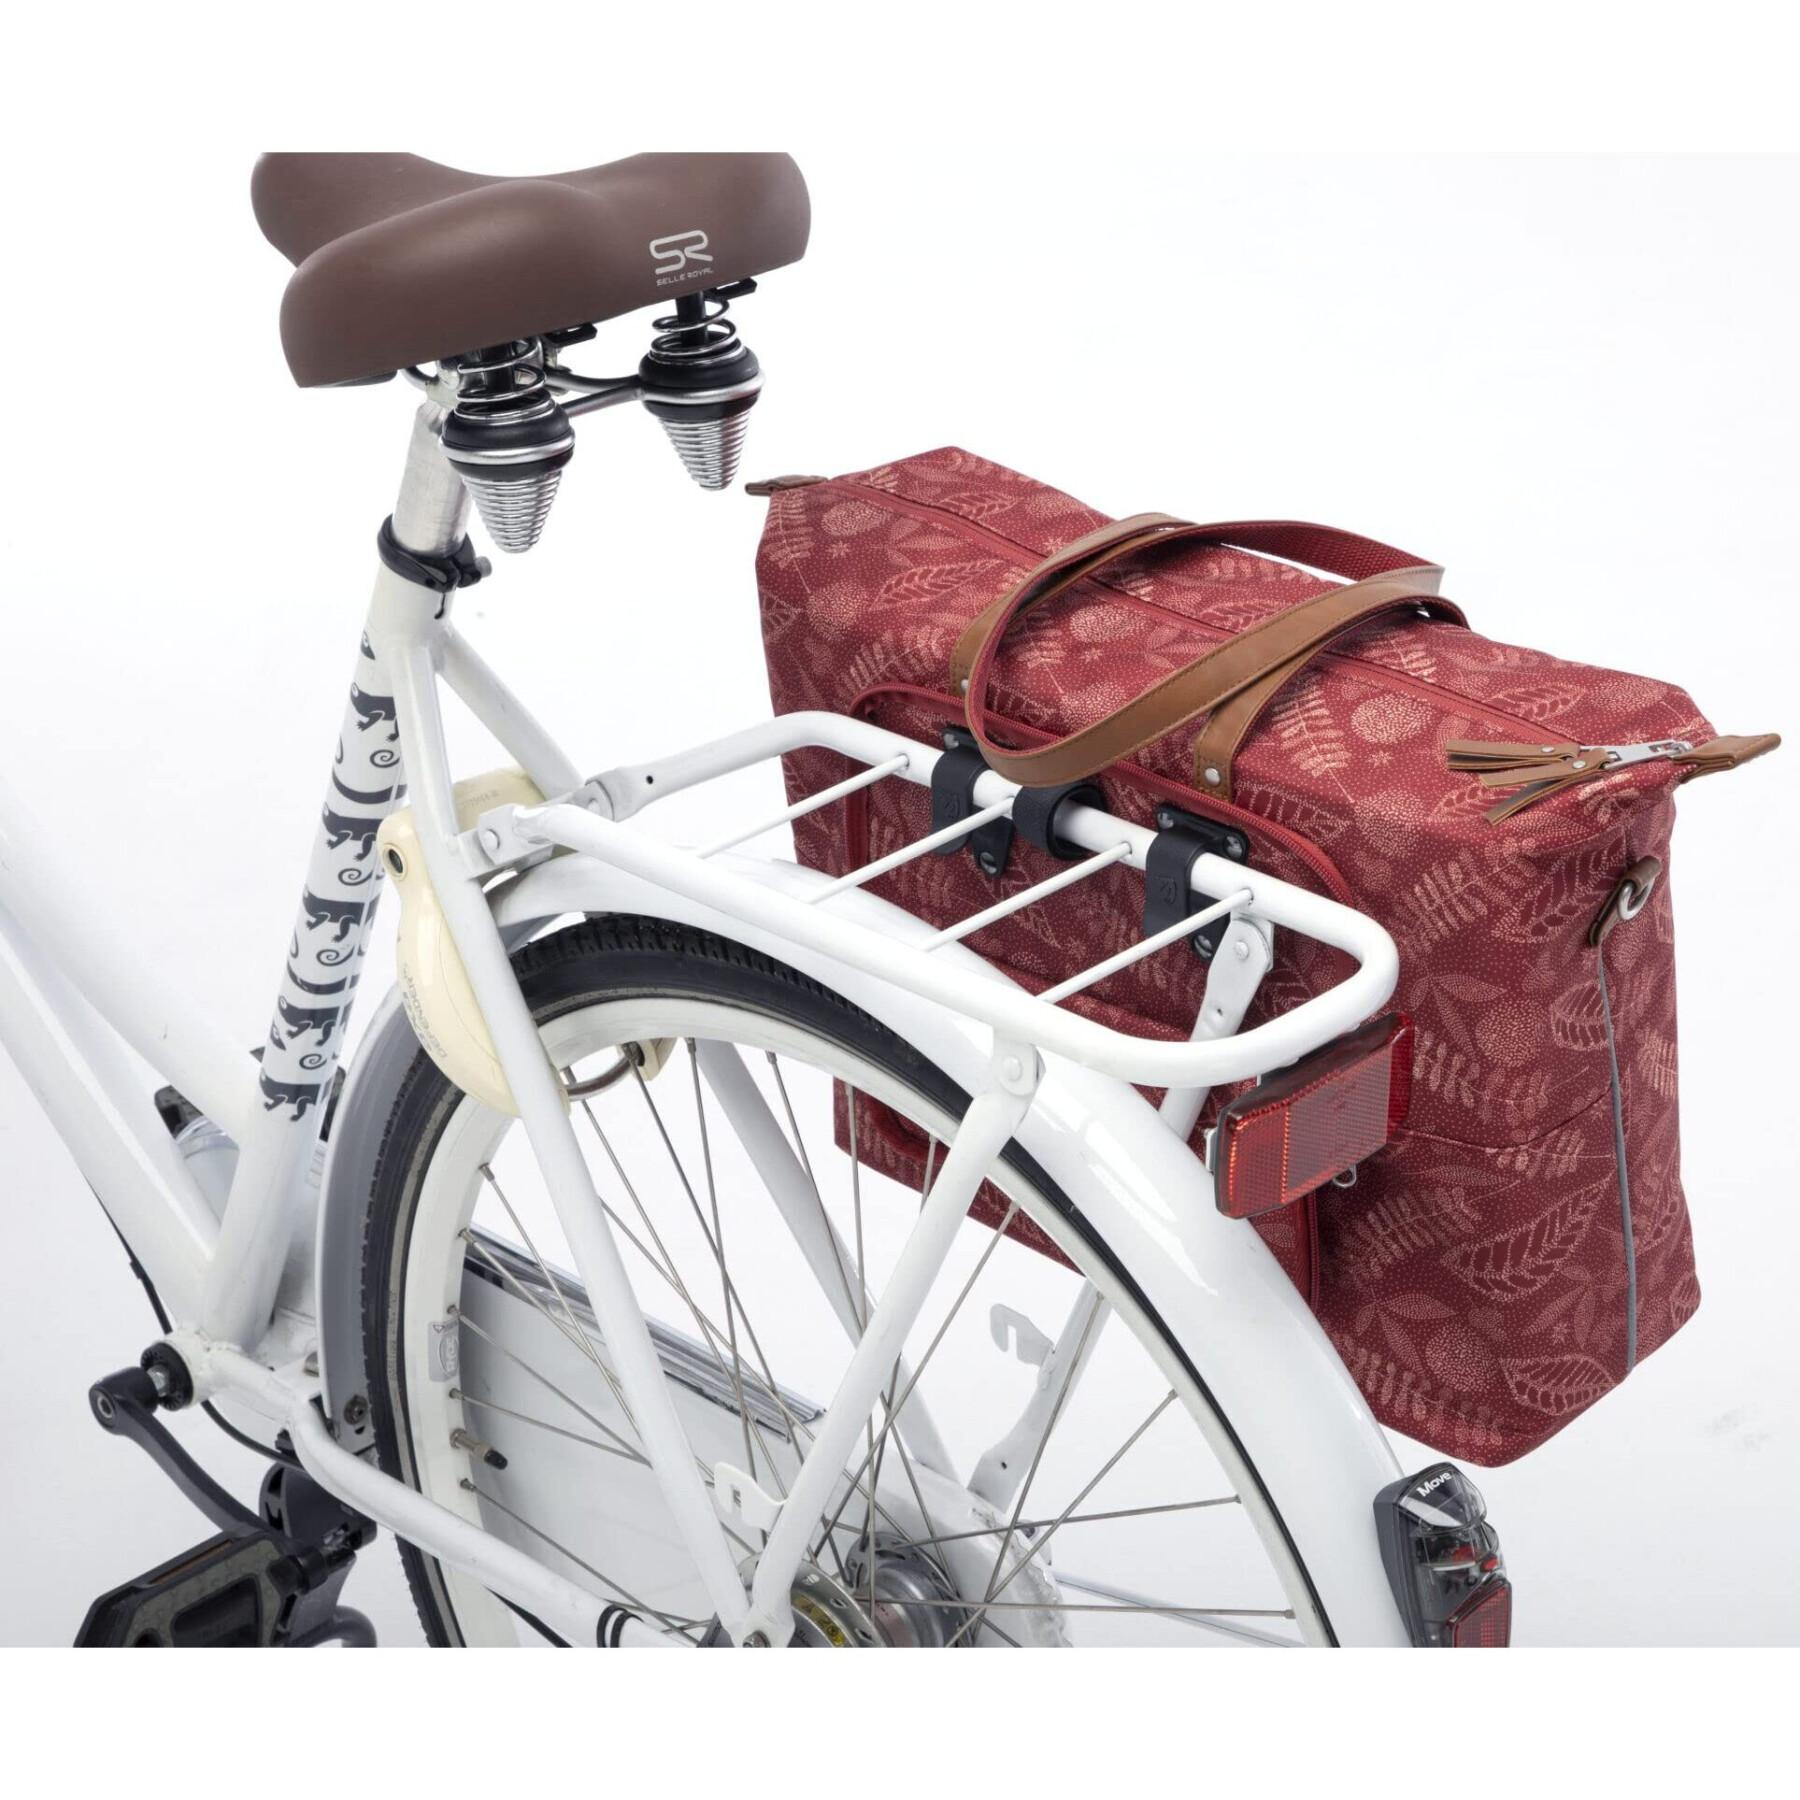 Odblaskowa poliestrowa wodoodporna torba na bagażnik rowerowy New Looxs Tendo